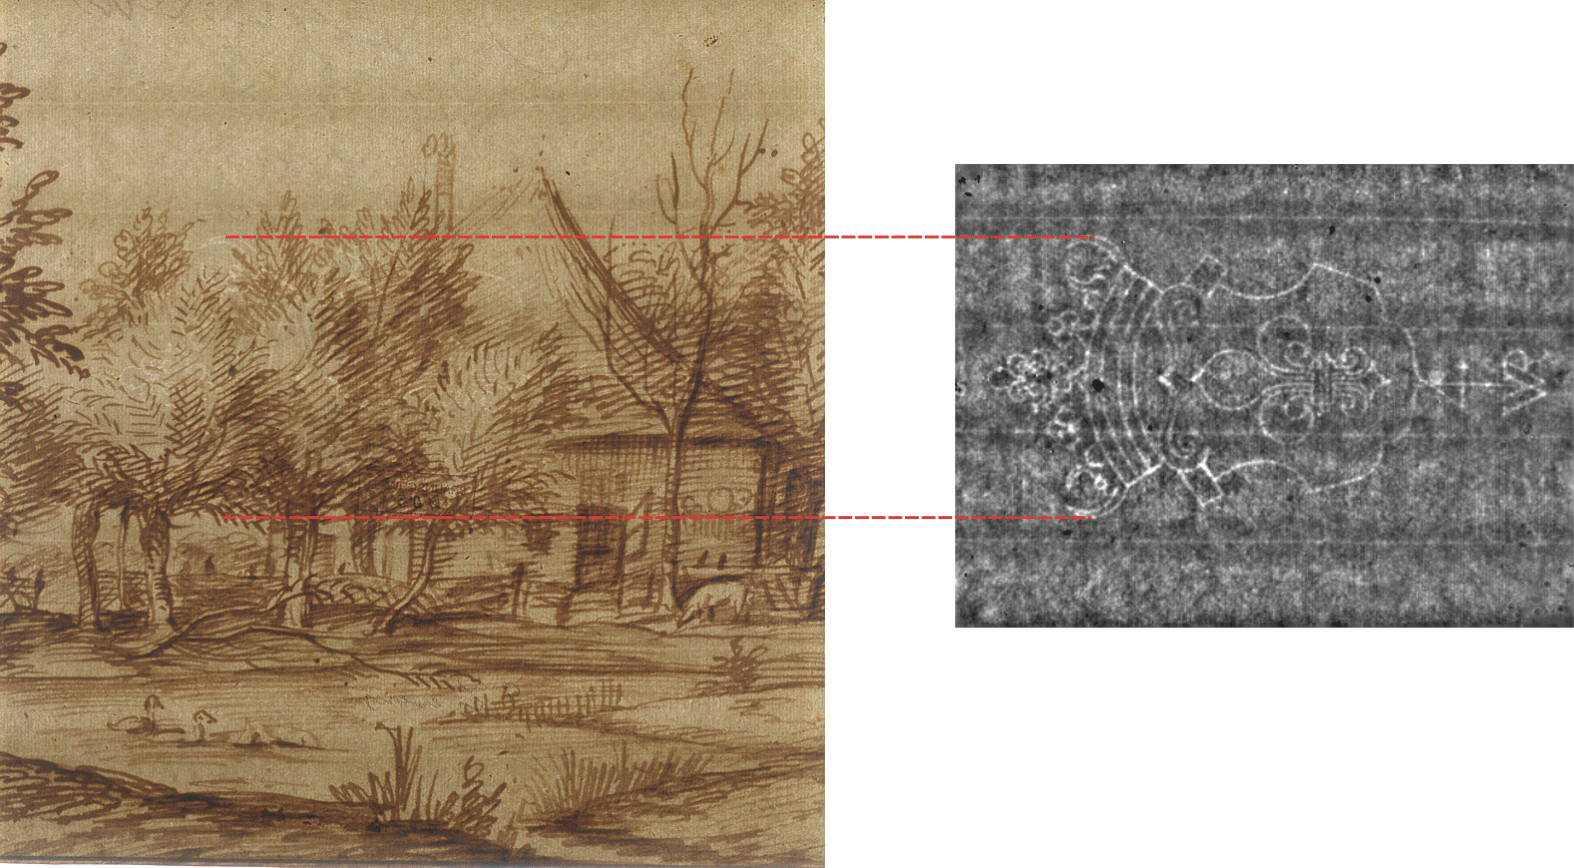 Foto einer Handzeichnung von Jan Lievens aus der Rembrandt-Schule (links). In dieser Durchlichtaufnahme ist das bekrönte Lilienwappen als Wasserzeichen im Gegensatz zu der Thermographieaufnahme (rechts) nicht zu erkennen.